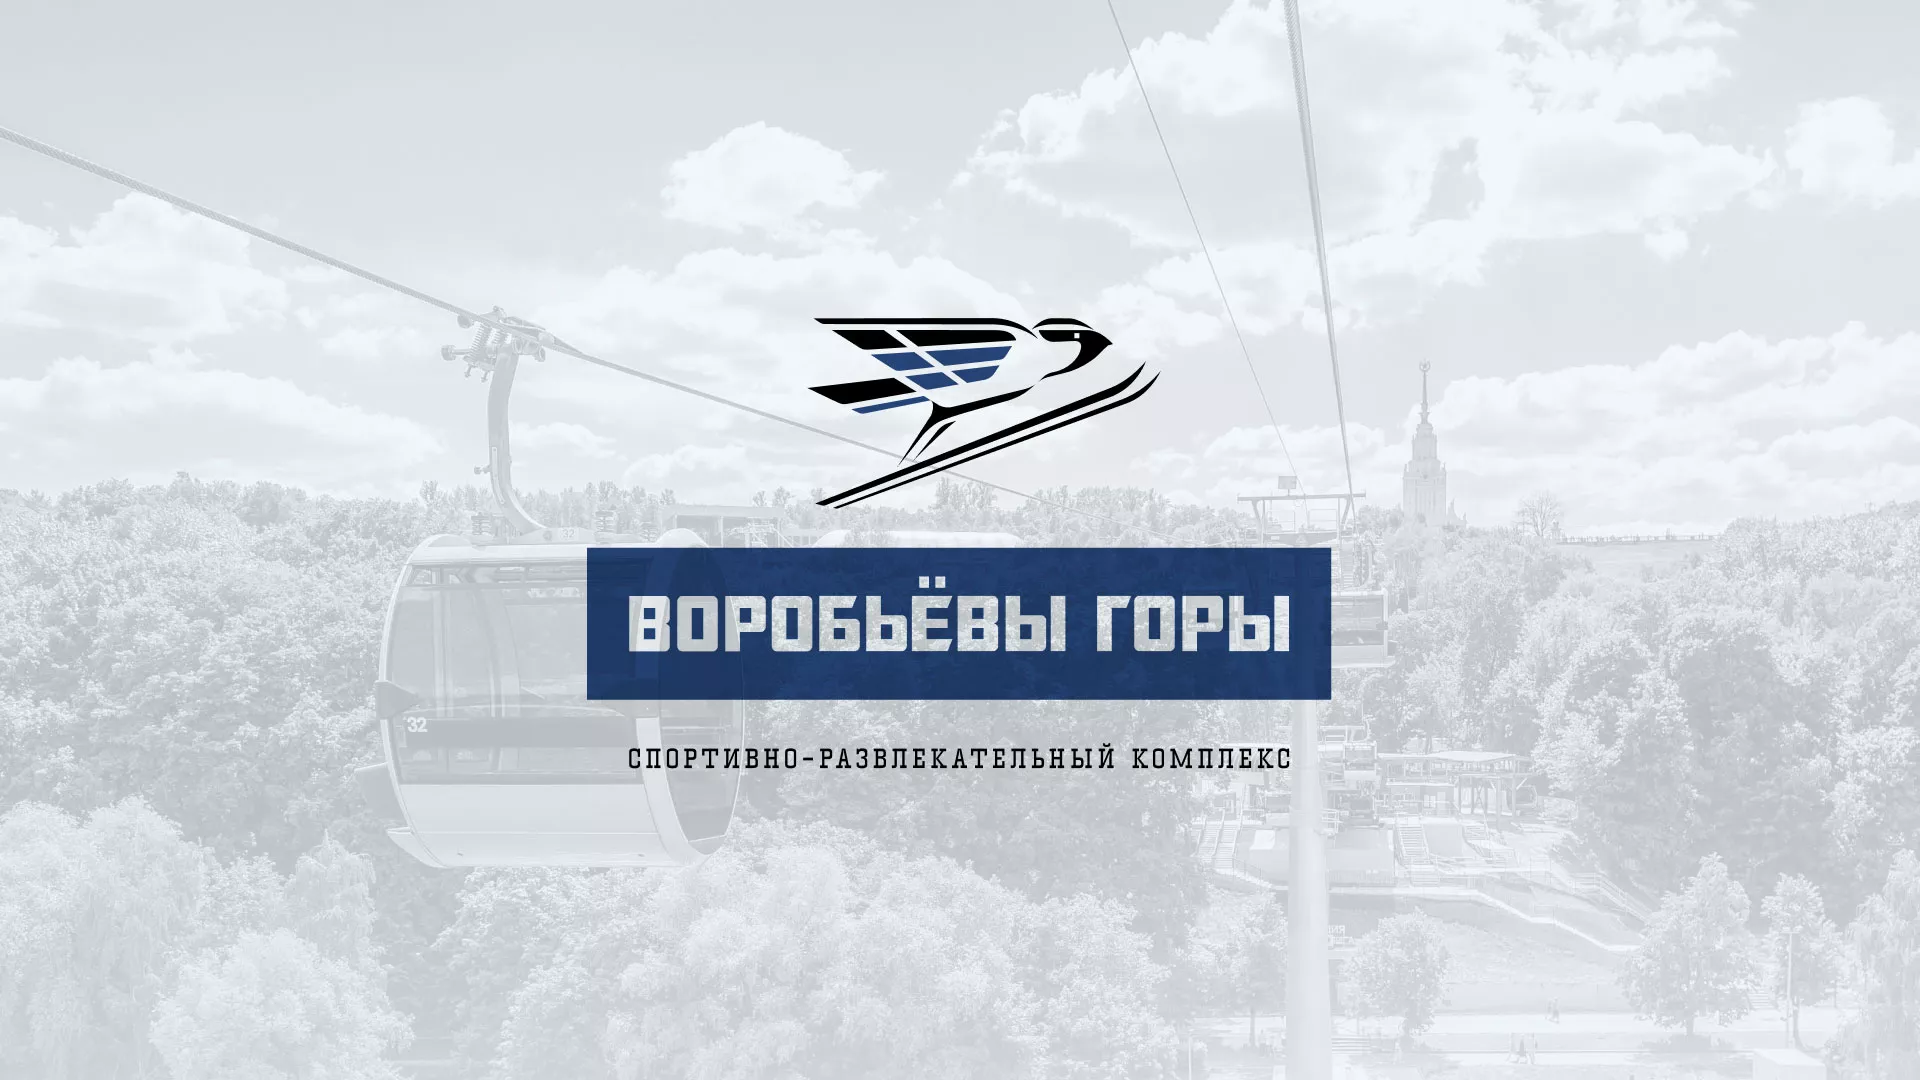 Разработка сайта в Усть-Джегуте для спортивно-развлекательного комплекса «Воробьёвы горы»